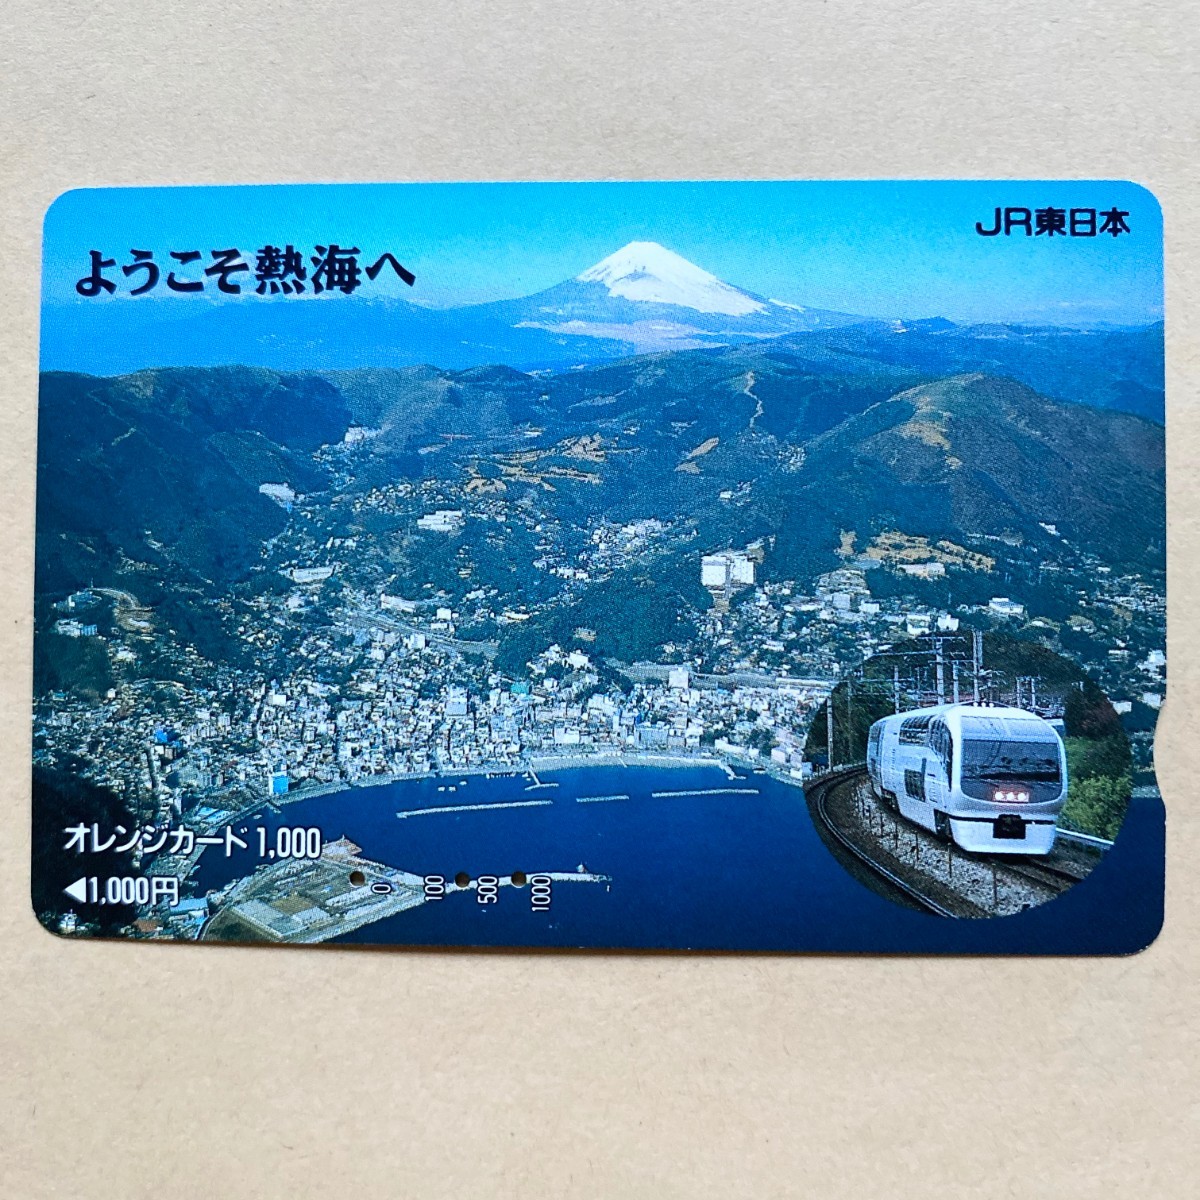 【使用済】 オレンジカード JR東日本 ようこそ熱海へ_画像1